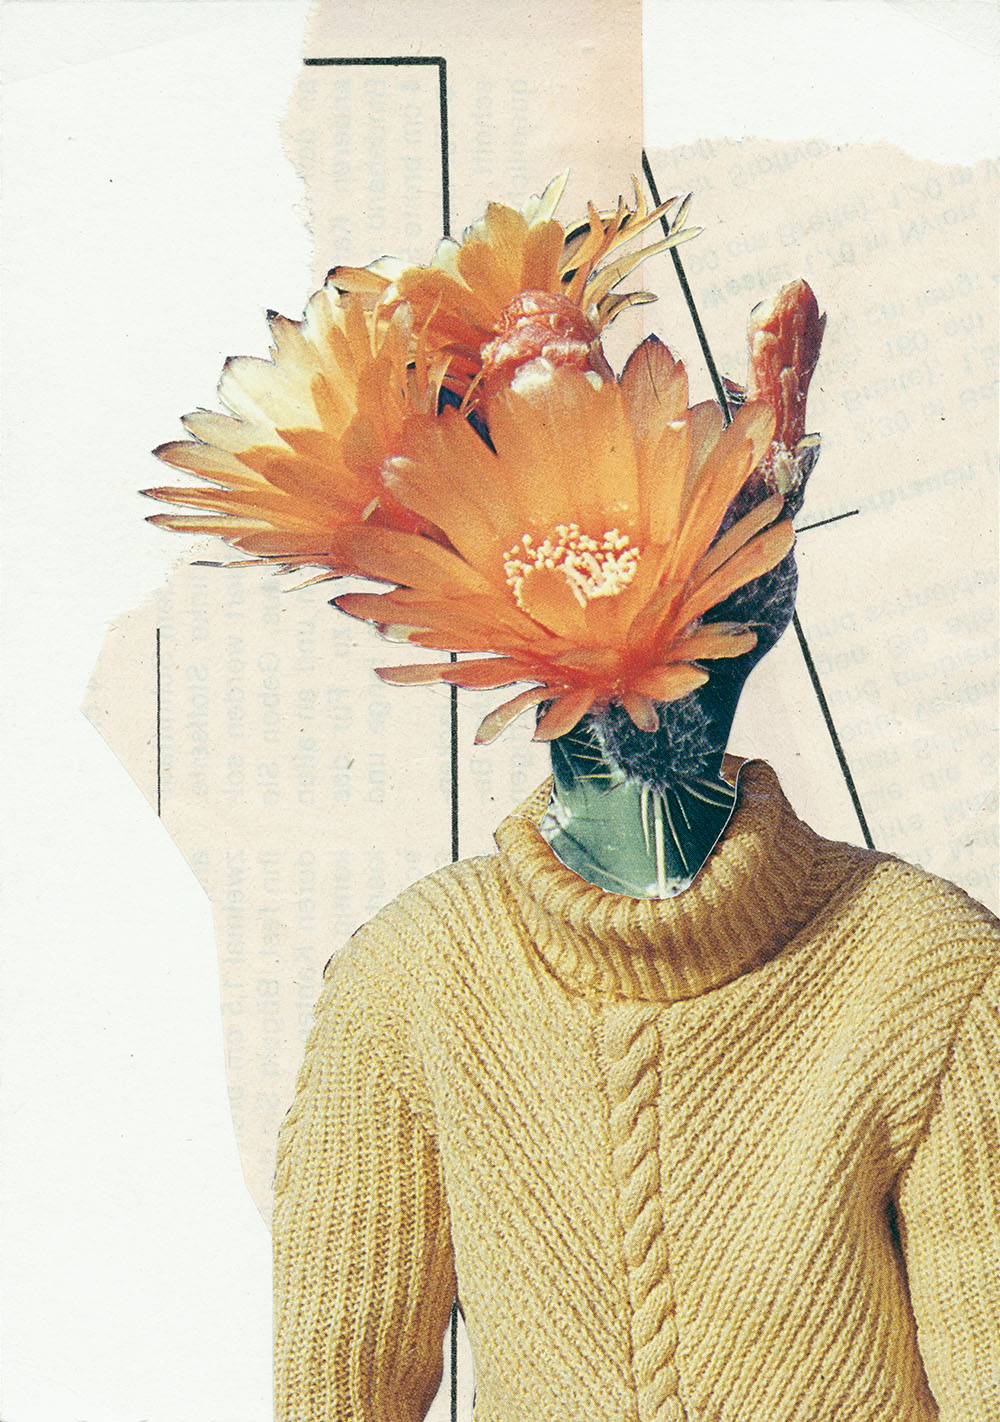 Kaktus Blütenkopf in gelbem Strickpulli- original Pflanzen, Blüten, Kakteen mit Klamotten, Kleidung Plants with Pants Collage von Markus Wuelbern